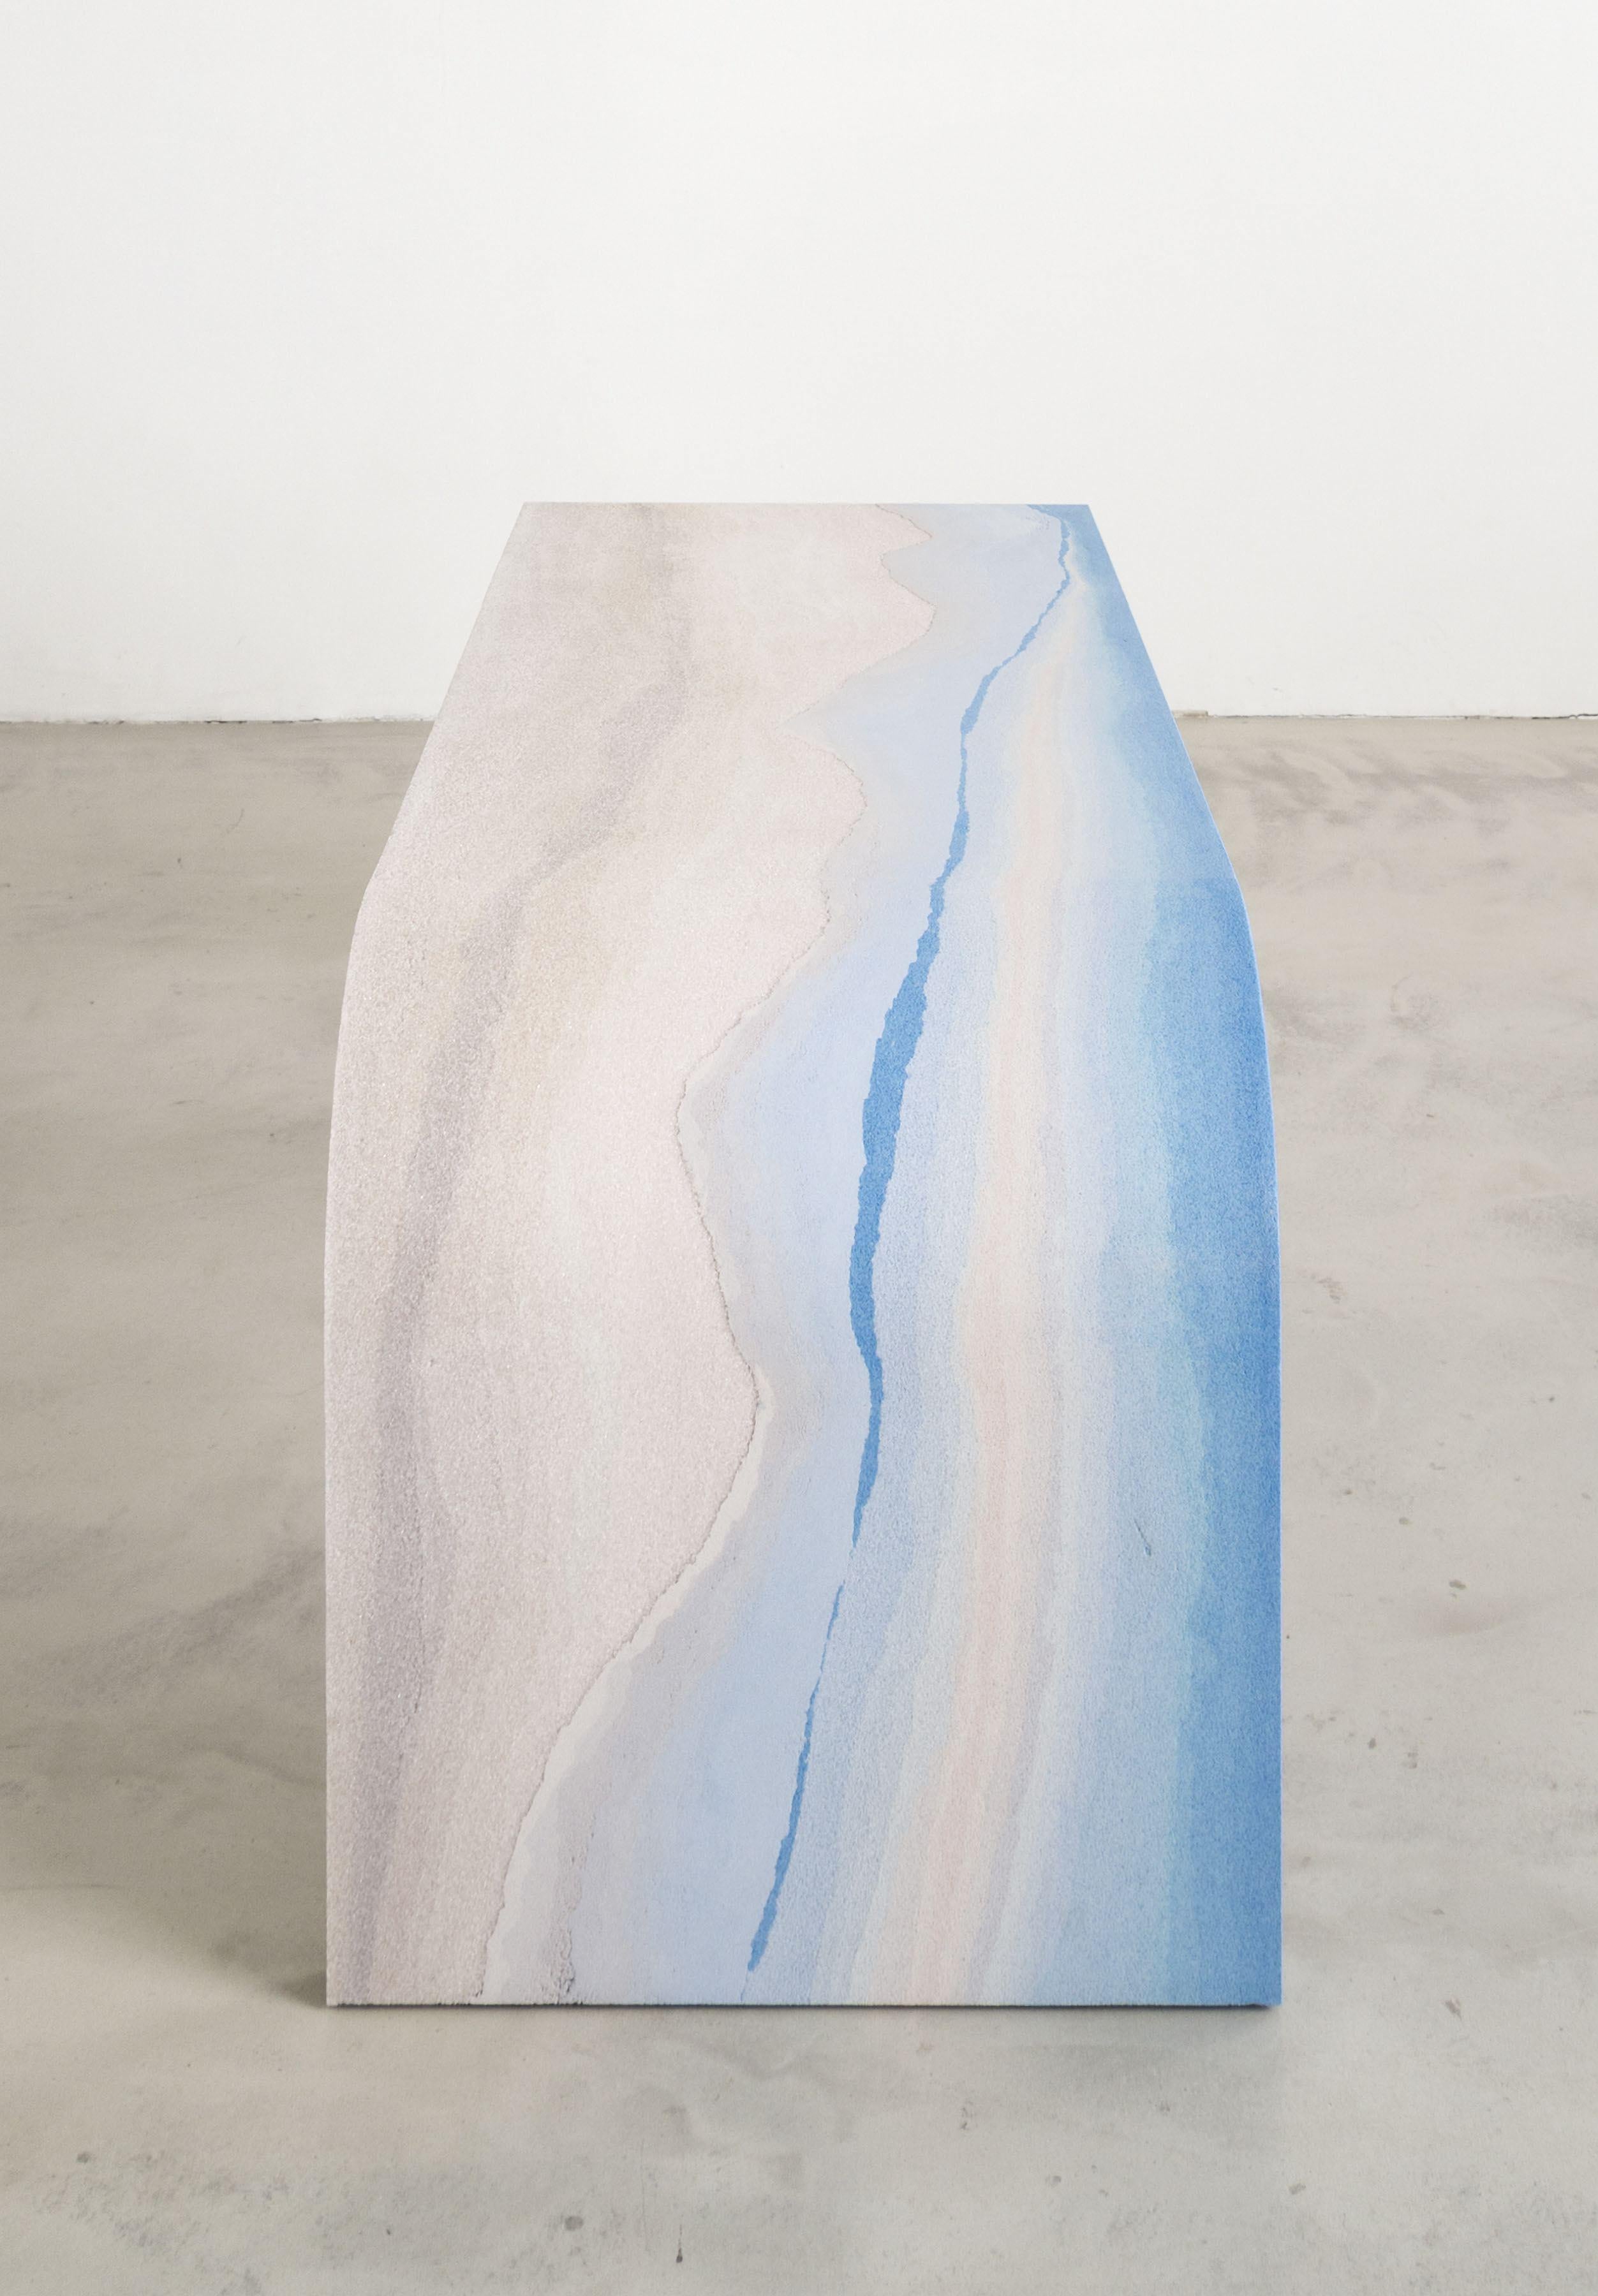 Fernando Mastrangelo ist ein Meister der Verbindung von Form, MATERIAL und Konzeption. Dieser Schreibtisch ist da keine Ausnahme. Die schlichte, horizontale Form hat eine einzige abgerundete Ecke, die sowohl die allmähliche Krümmung der Erde als